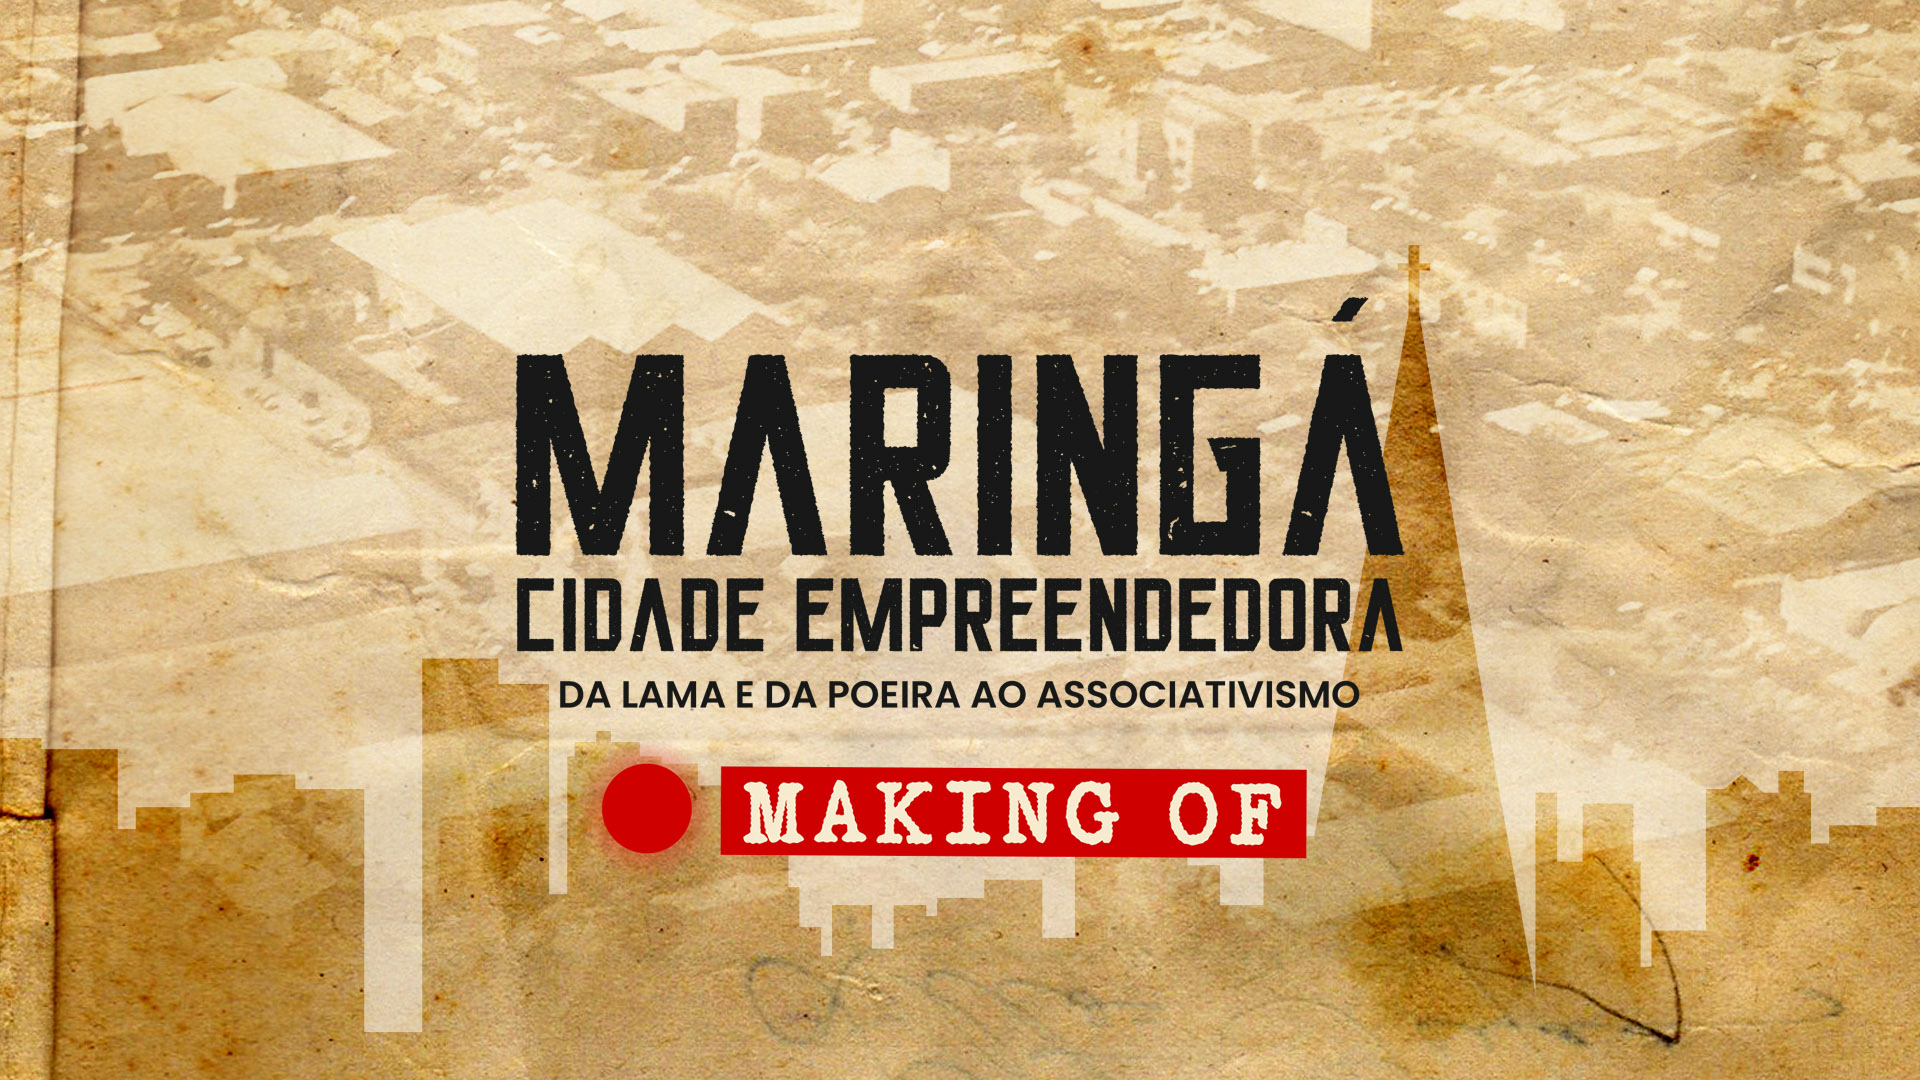 MAKING OF - Maringá Cidade Empreendedora: da lama e da poeira ao associativismo